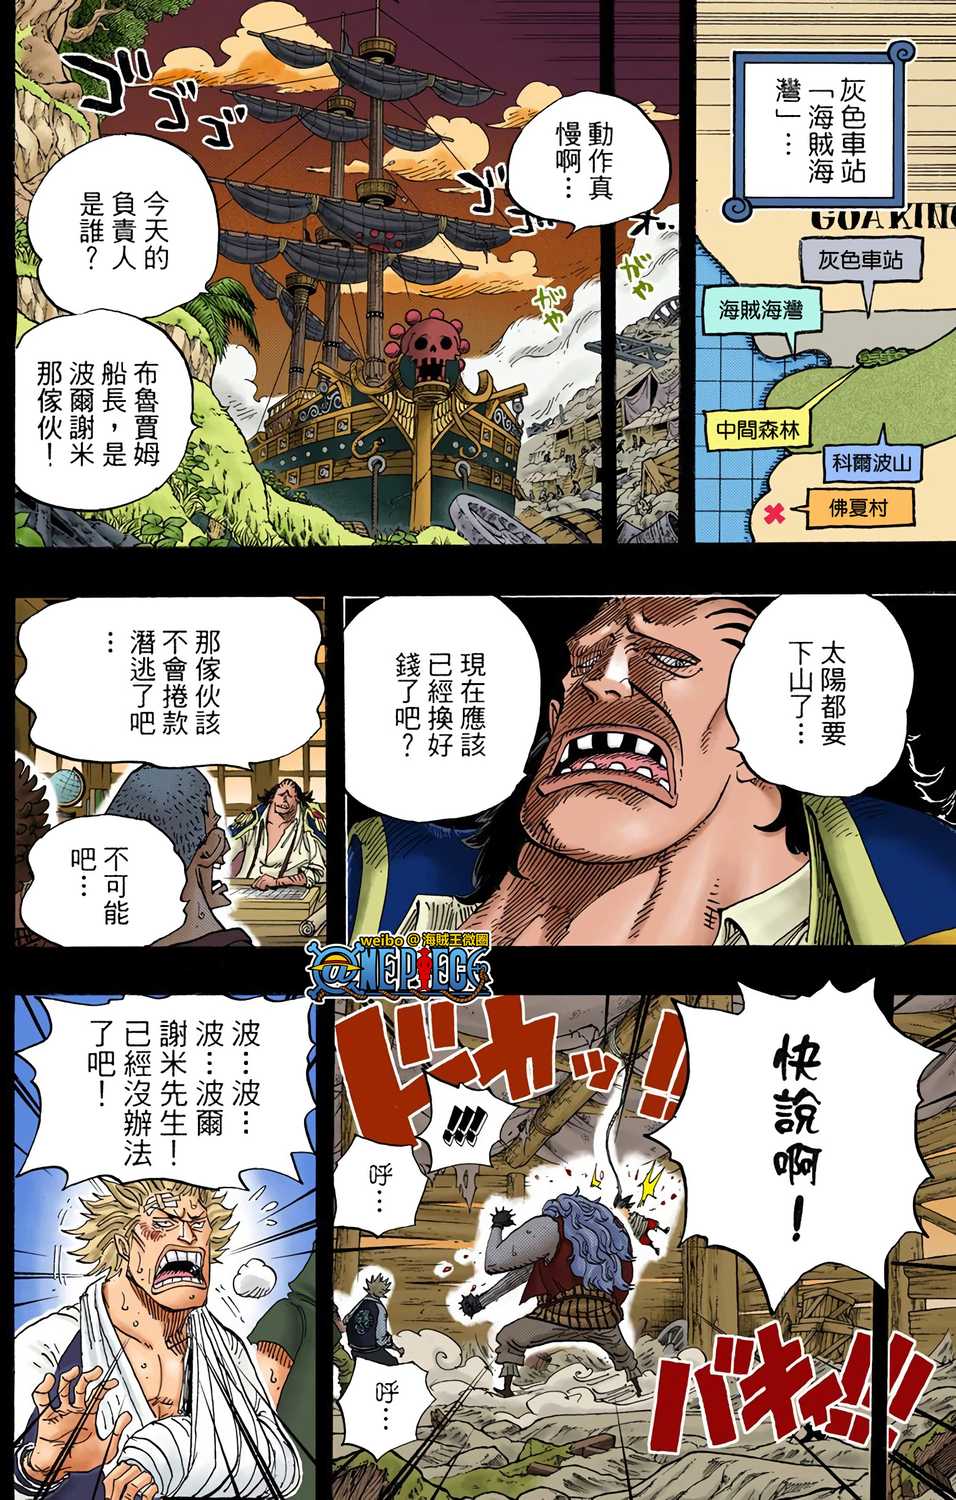 70以上one Piece 漫画村 ハイキューネタバレ